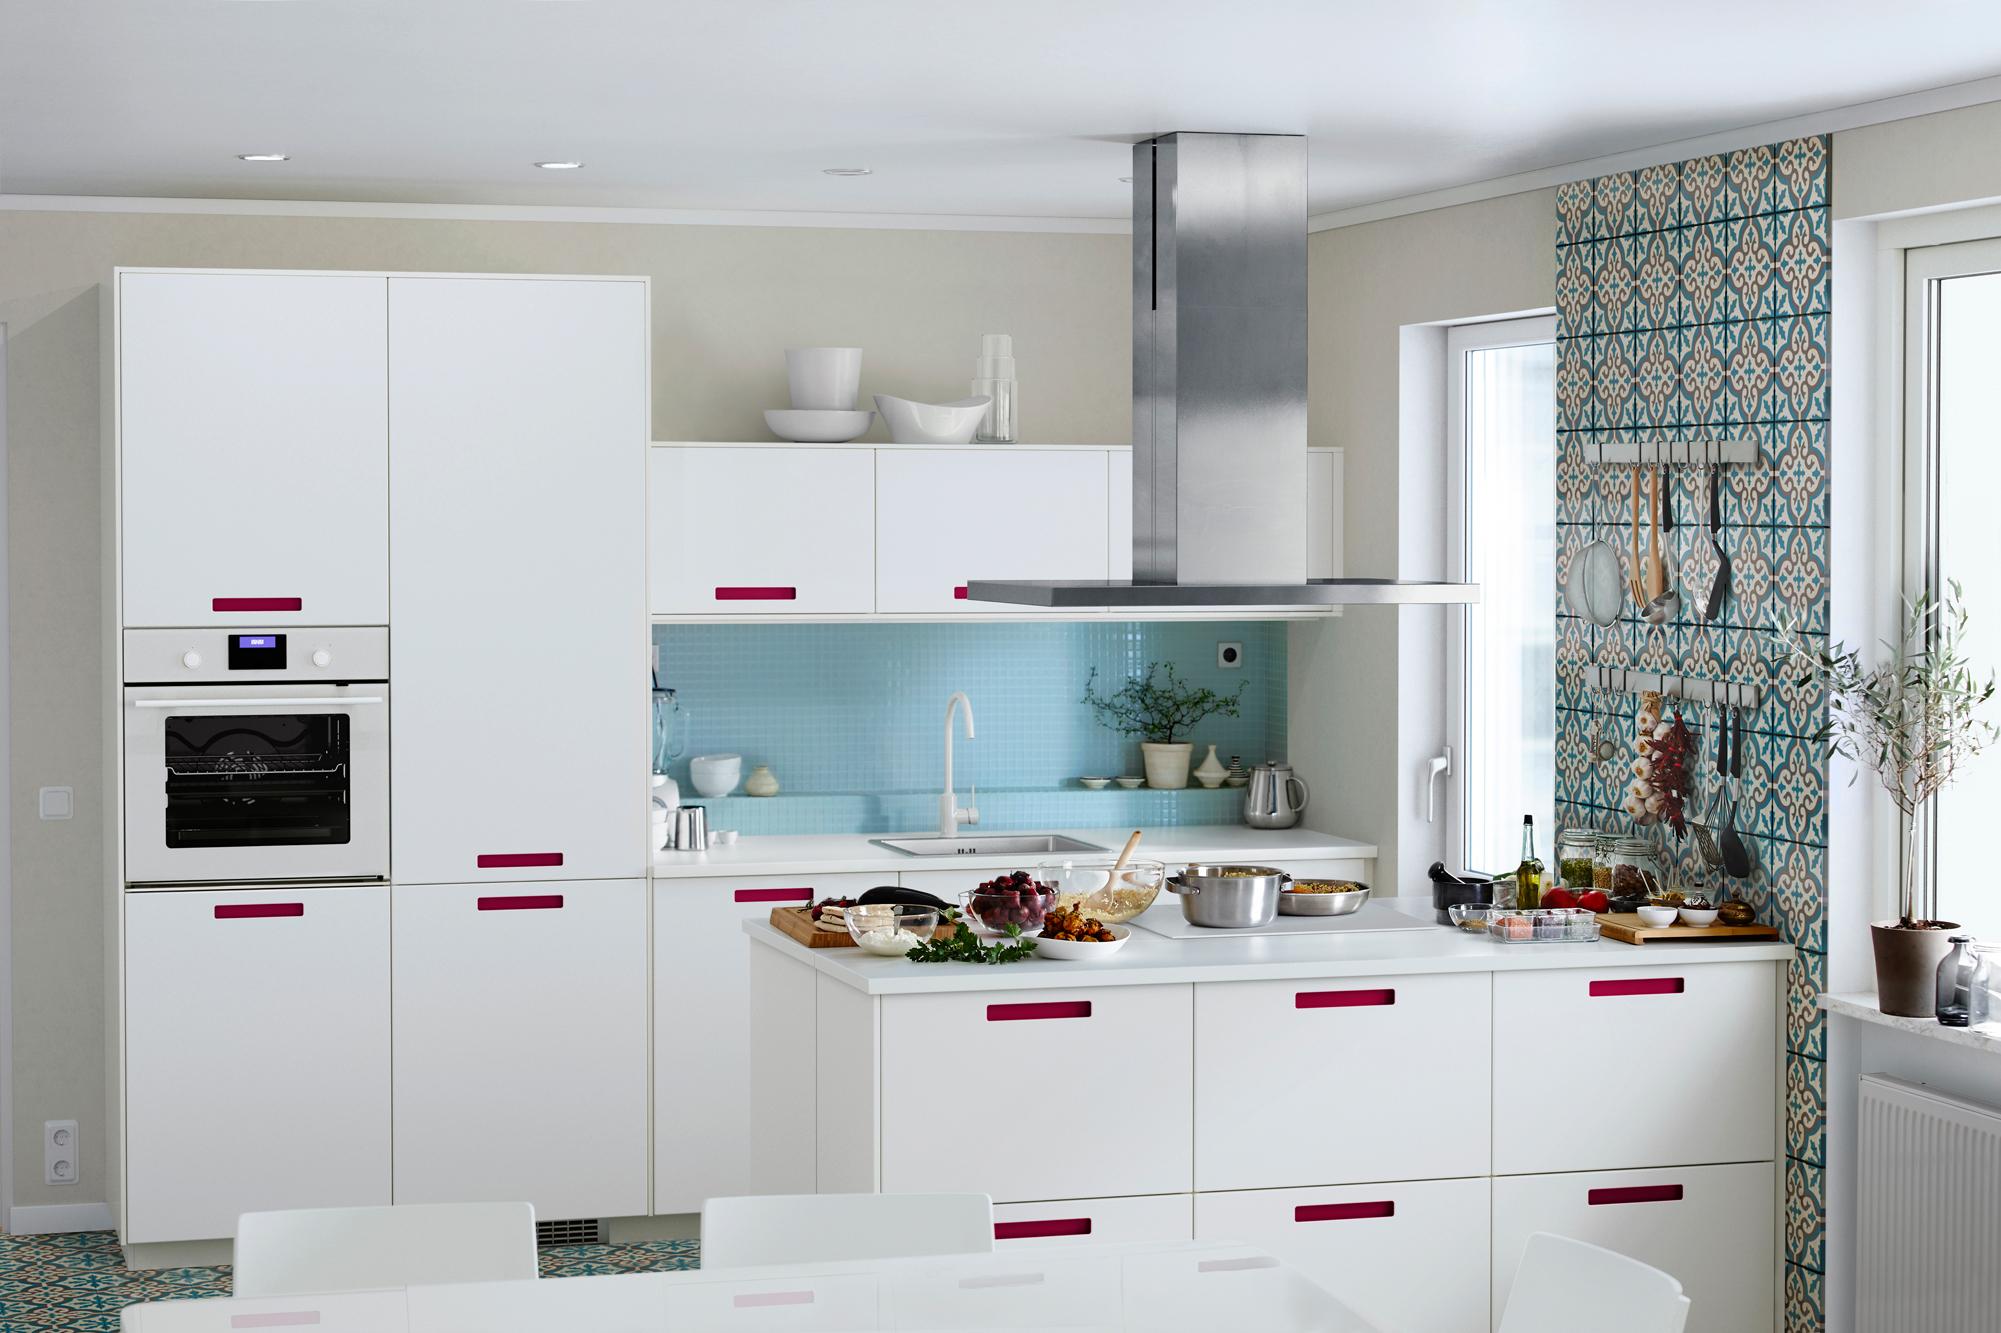 Küche mit Musterfliesen #küche #fliesen #dunstabzugshaube #ikea #weißeküche #kücheninsel #küchenfliesen #zimmergestaltung ©Inter IKEA Systems B.V.